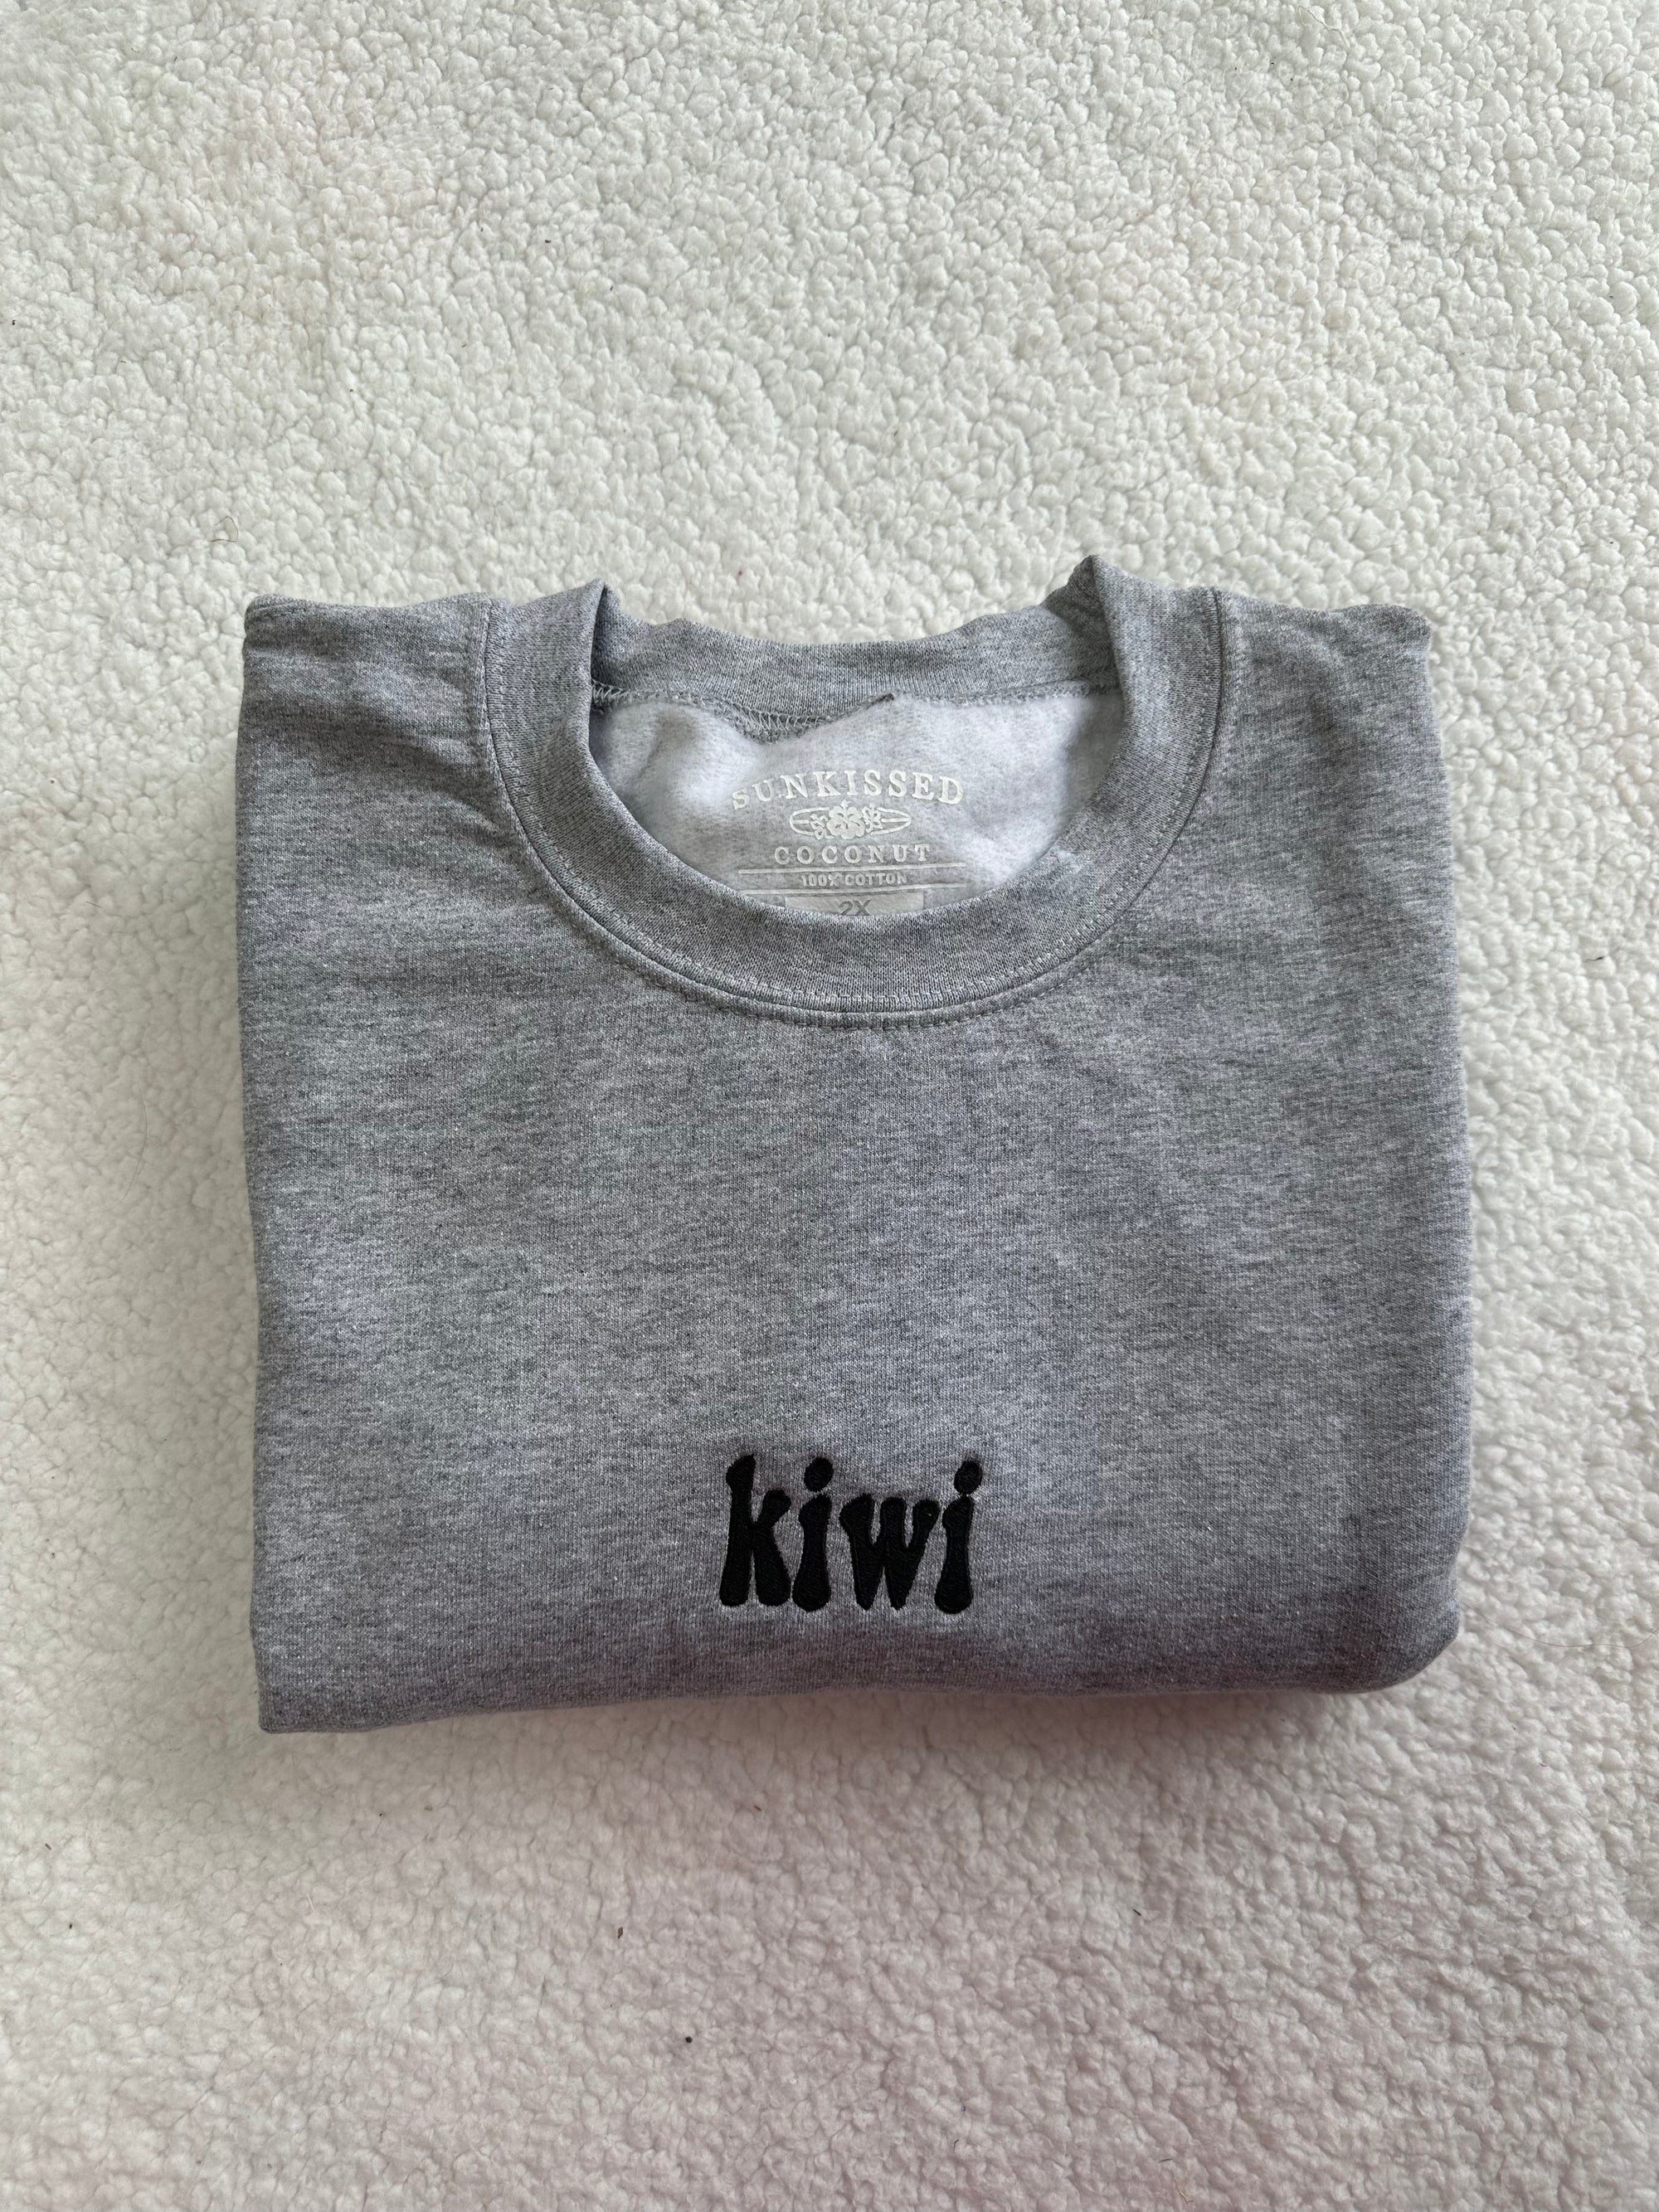 Kiwi Sweatshirt